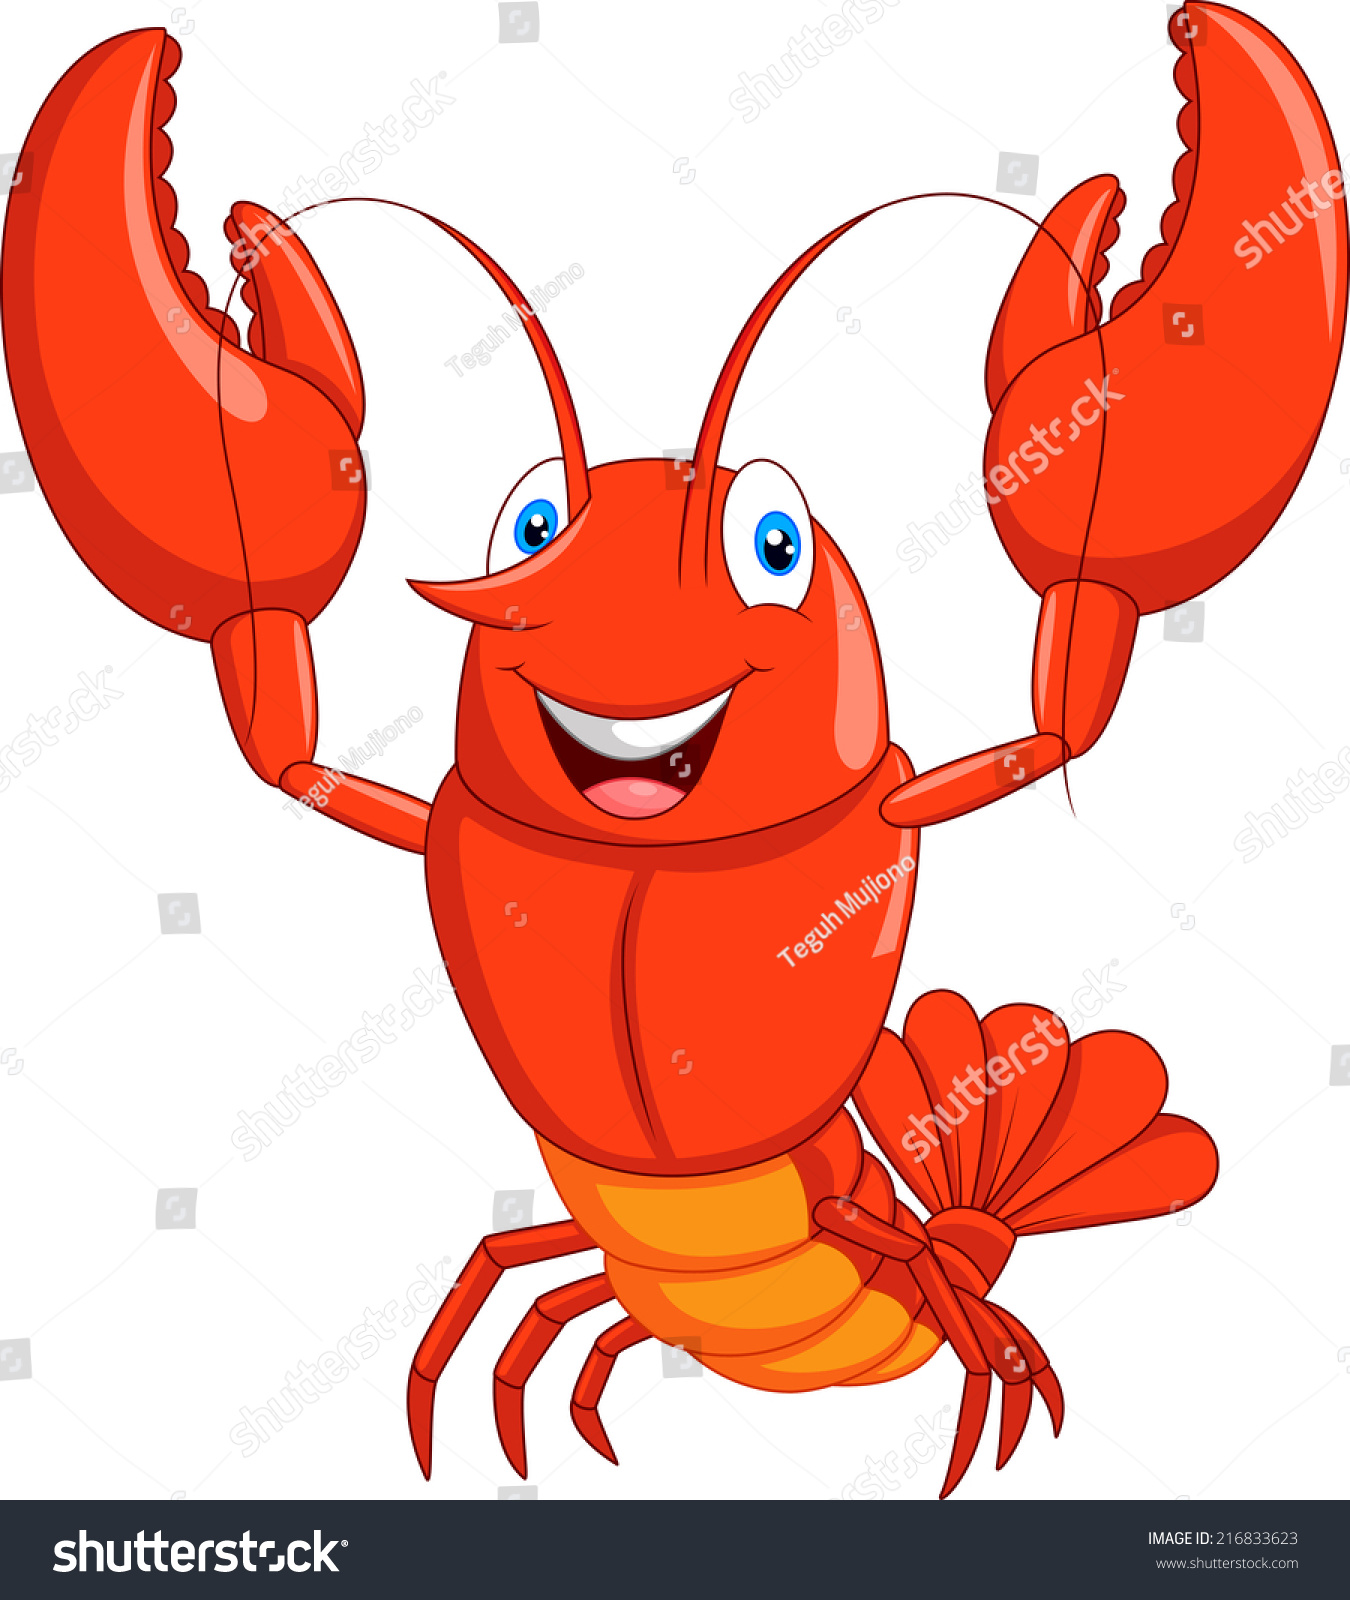 Cartoon Lobster Stock Vector 216833623 - Shutterstock